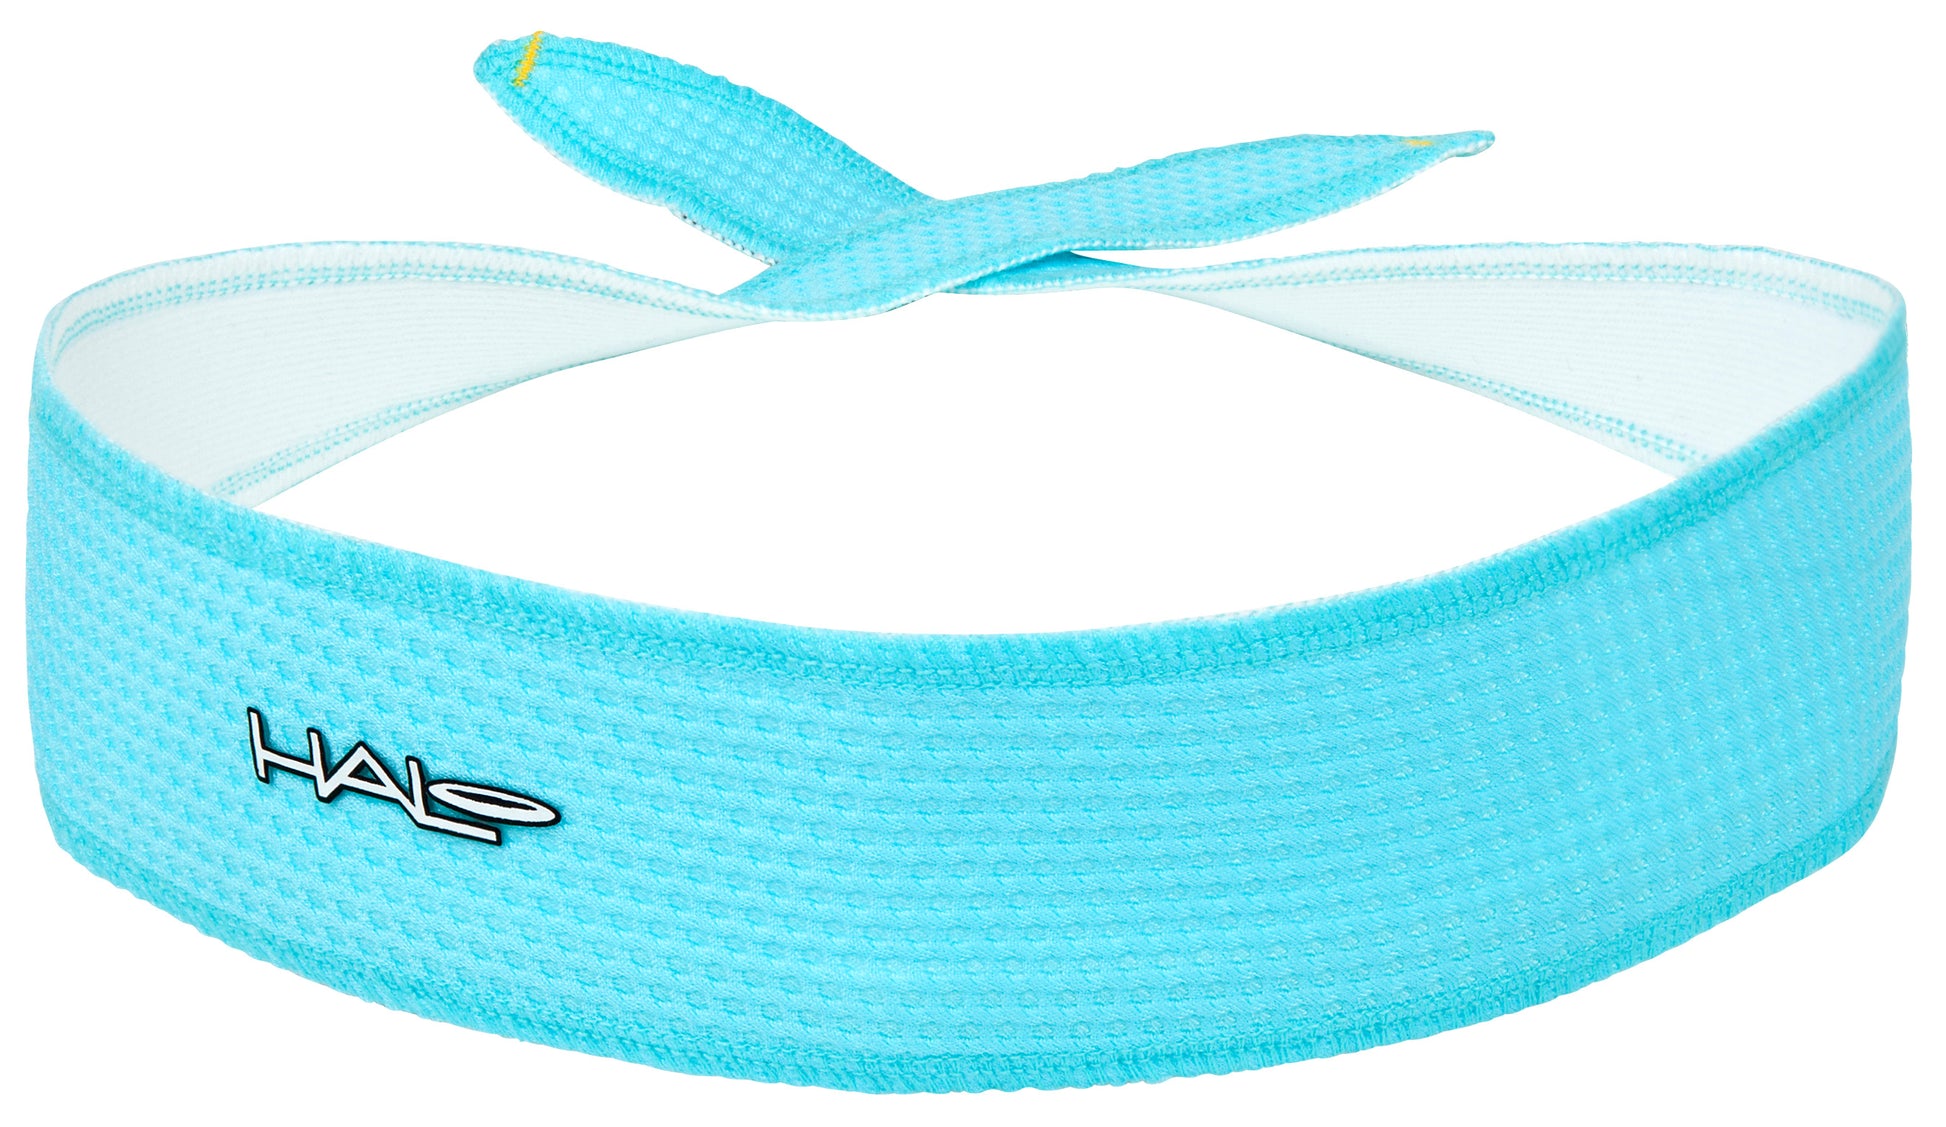 Halo headband, tie version 1 inch in aqua air